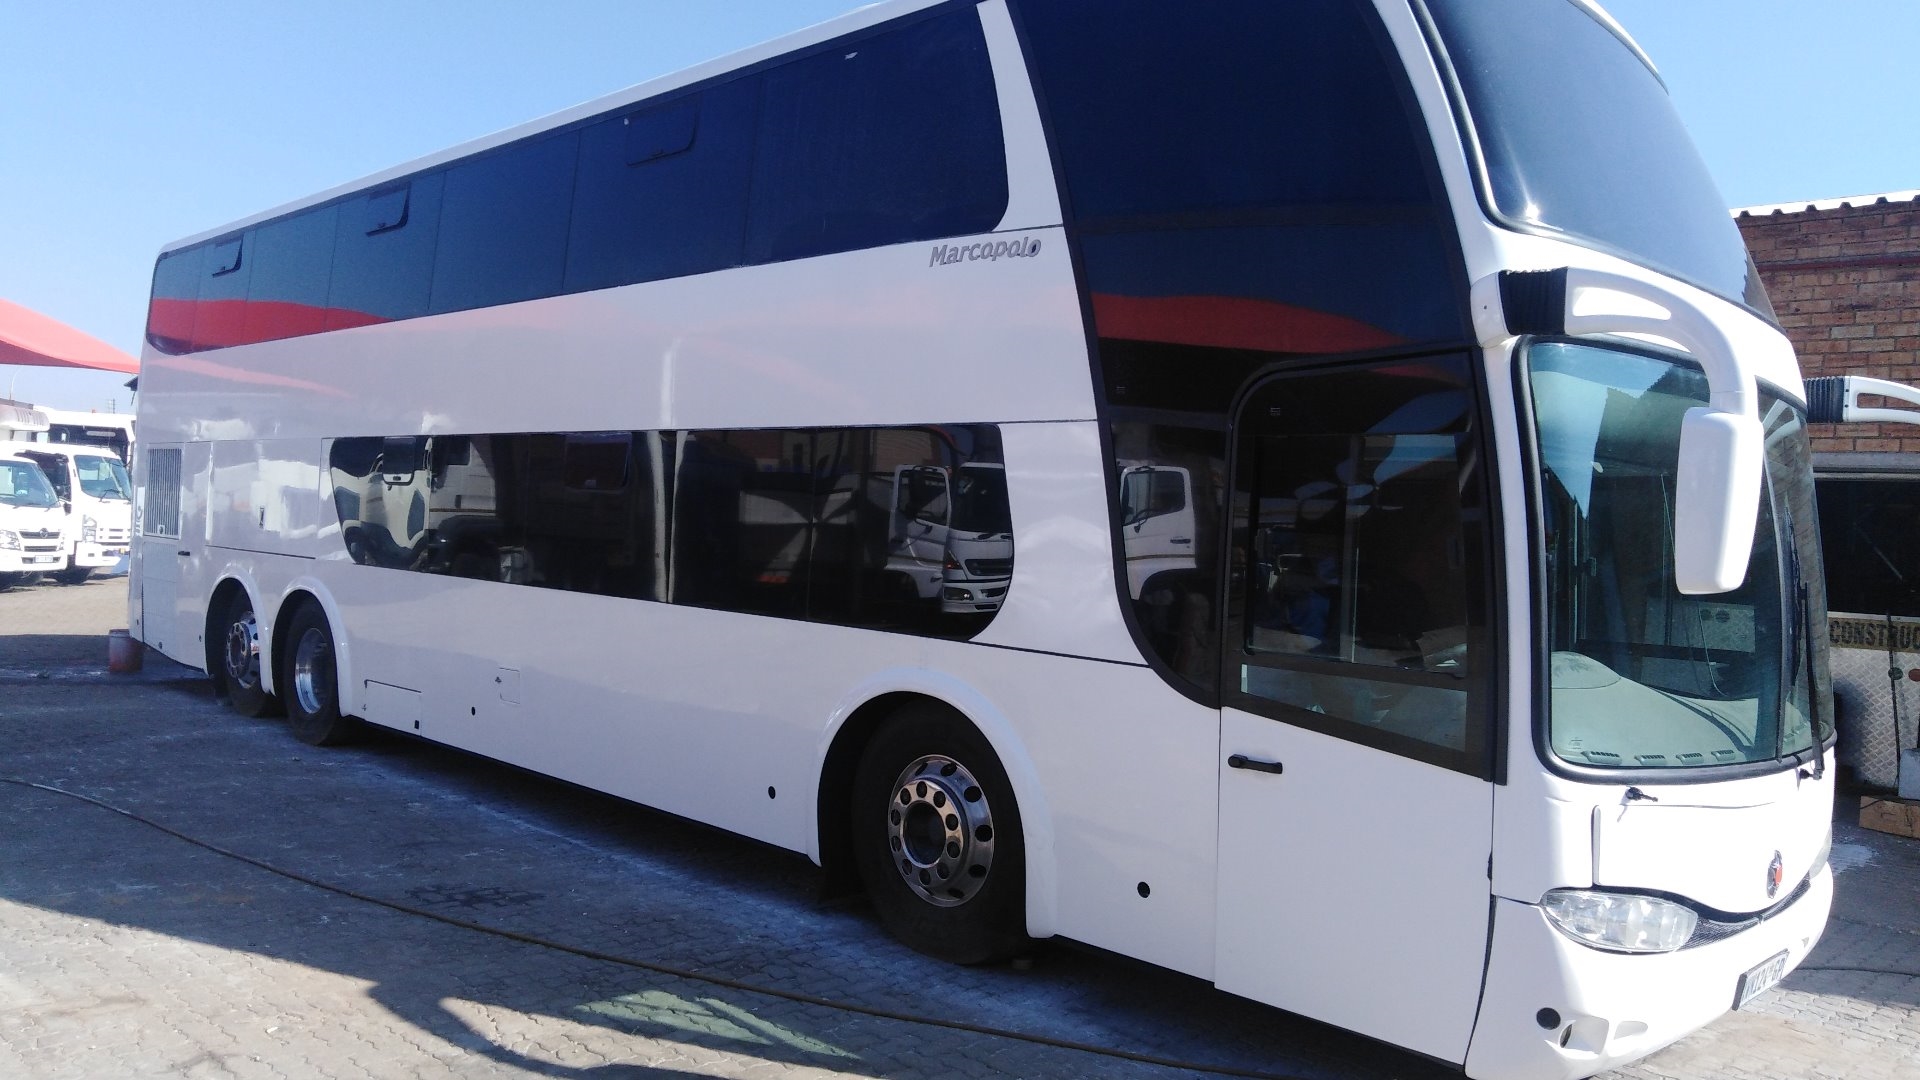 tour bus for sale johannesburg